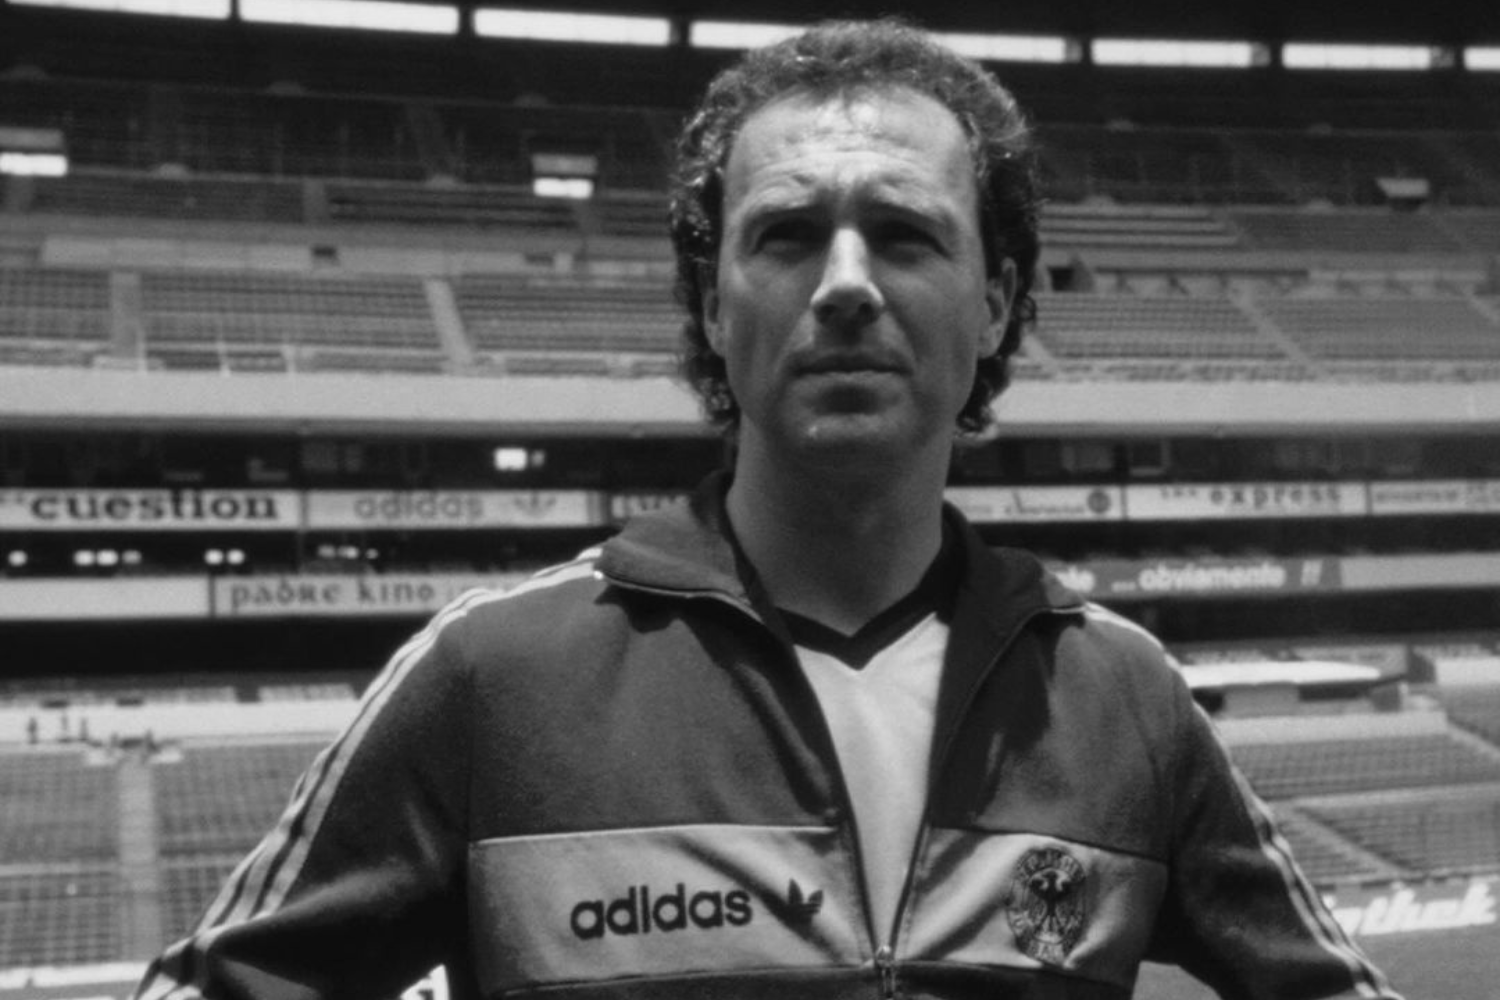 German soccer icon Franz Beckenbauer died at age 78